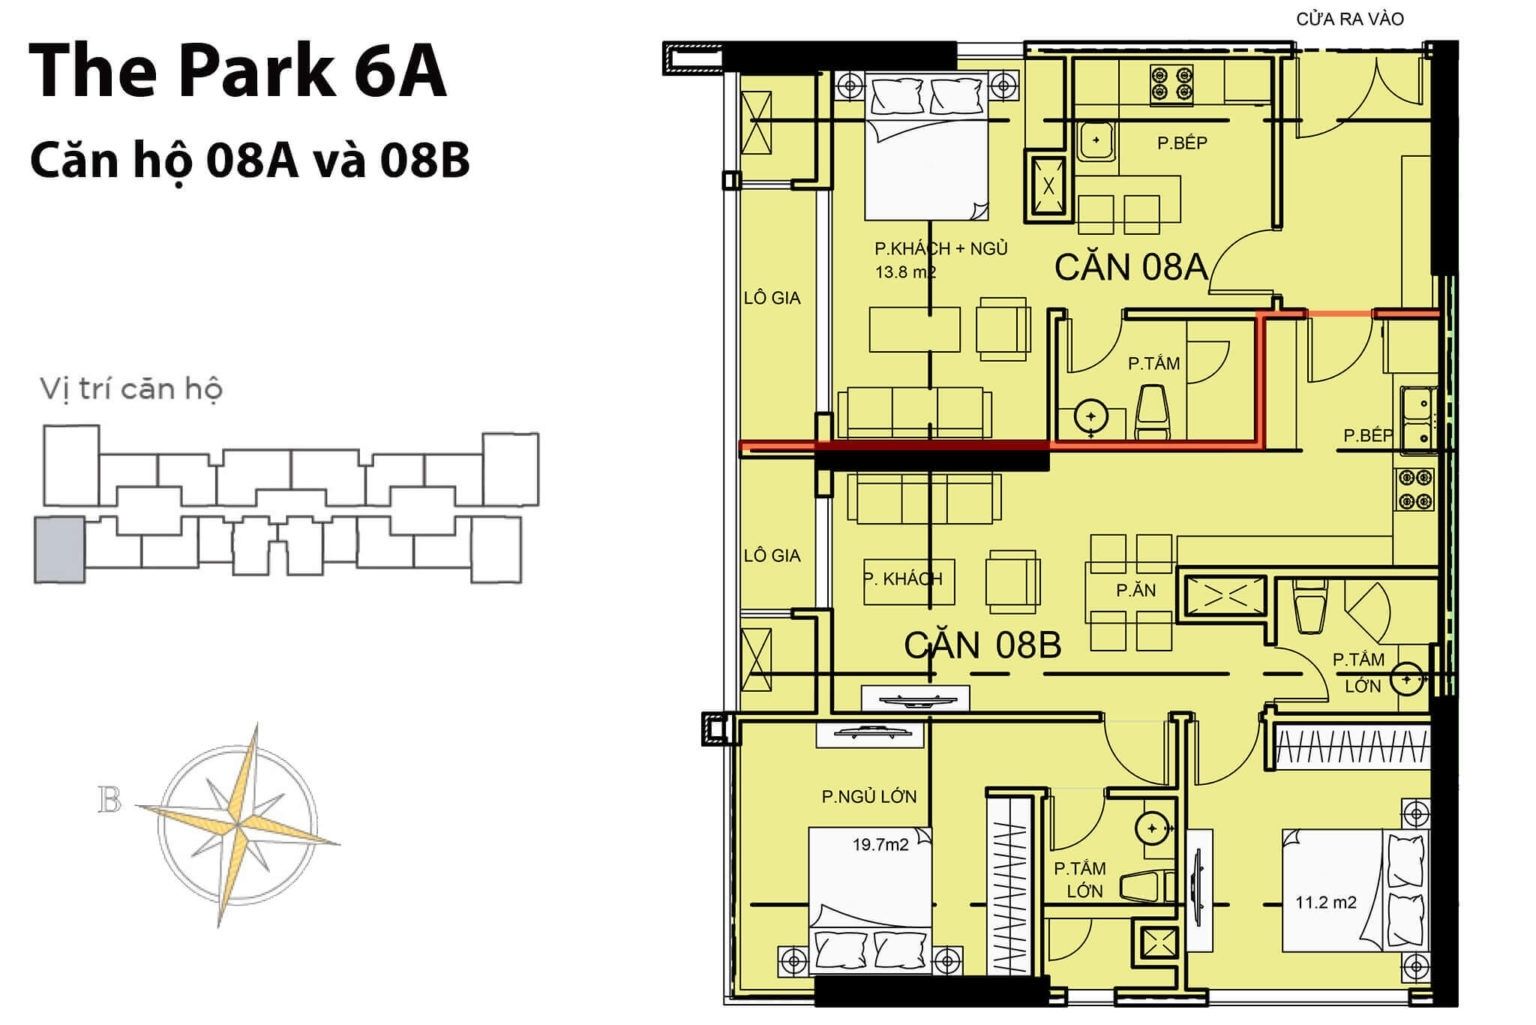 Layout căn hộ P6-A08A và P6-A08B tầng 2-22 & 24-50